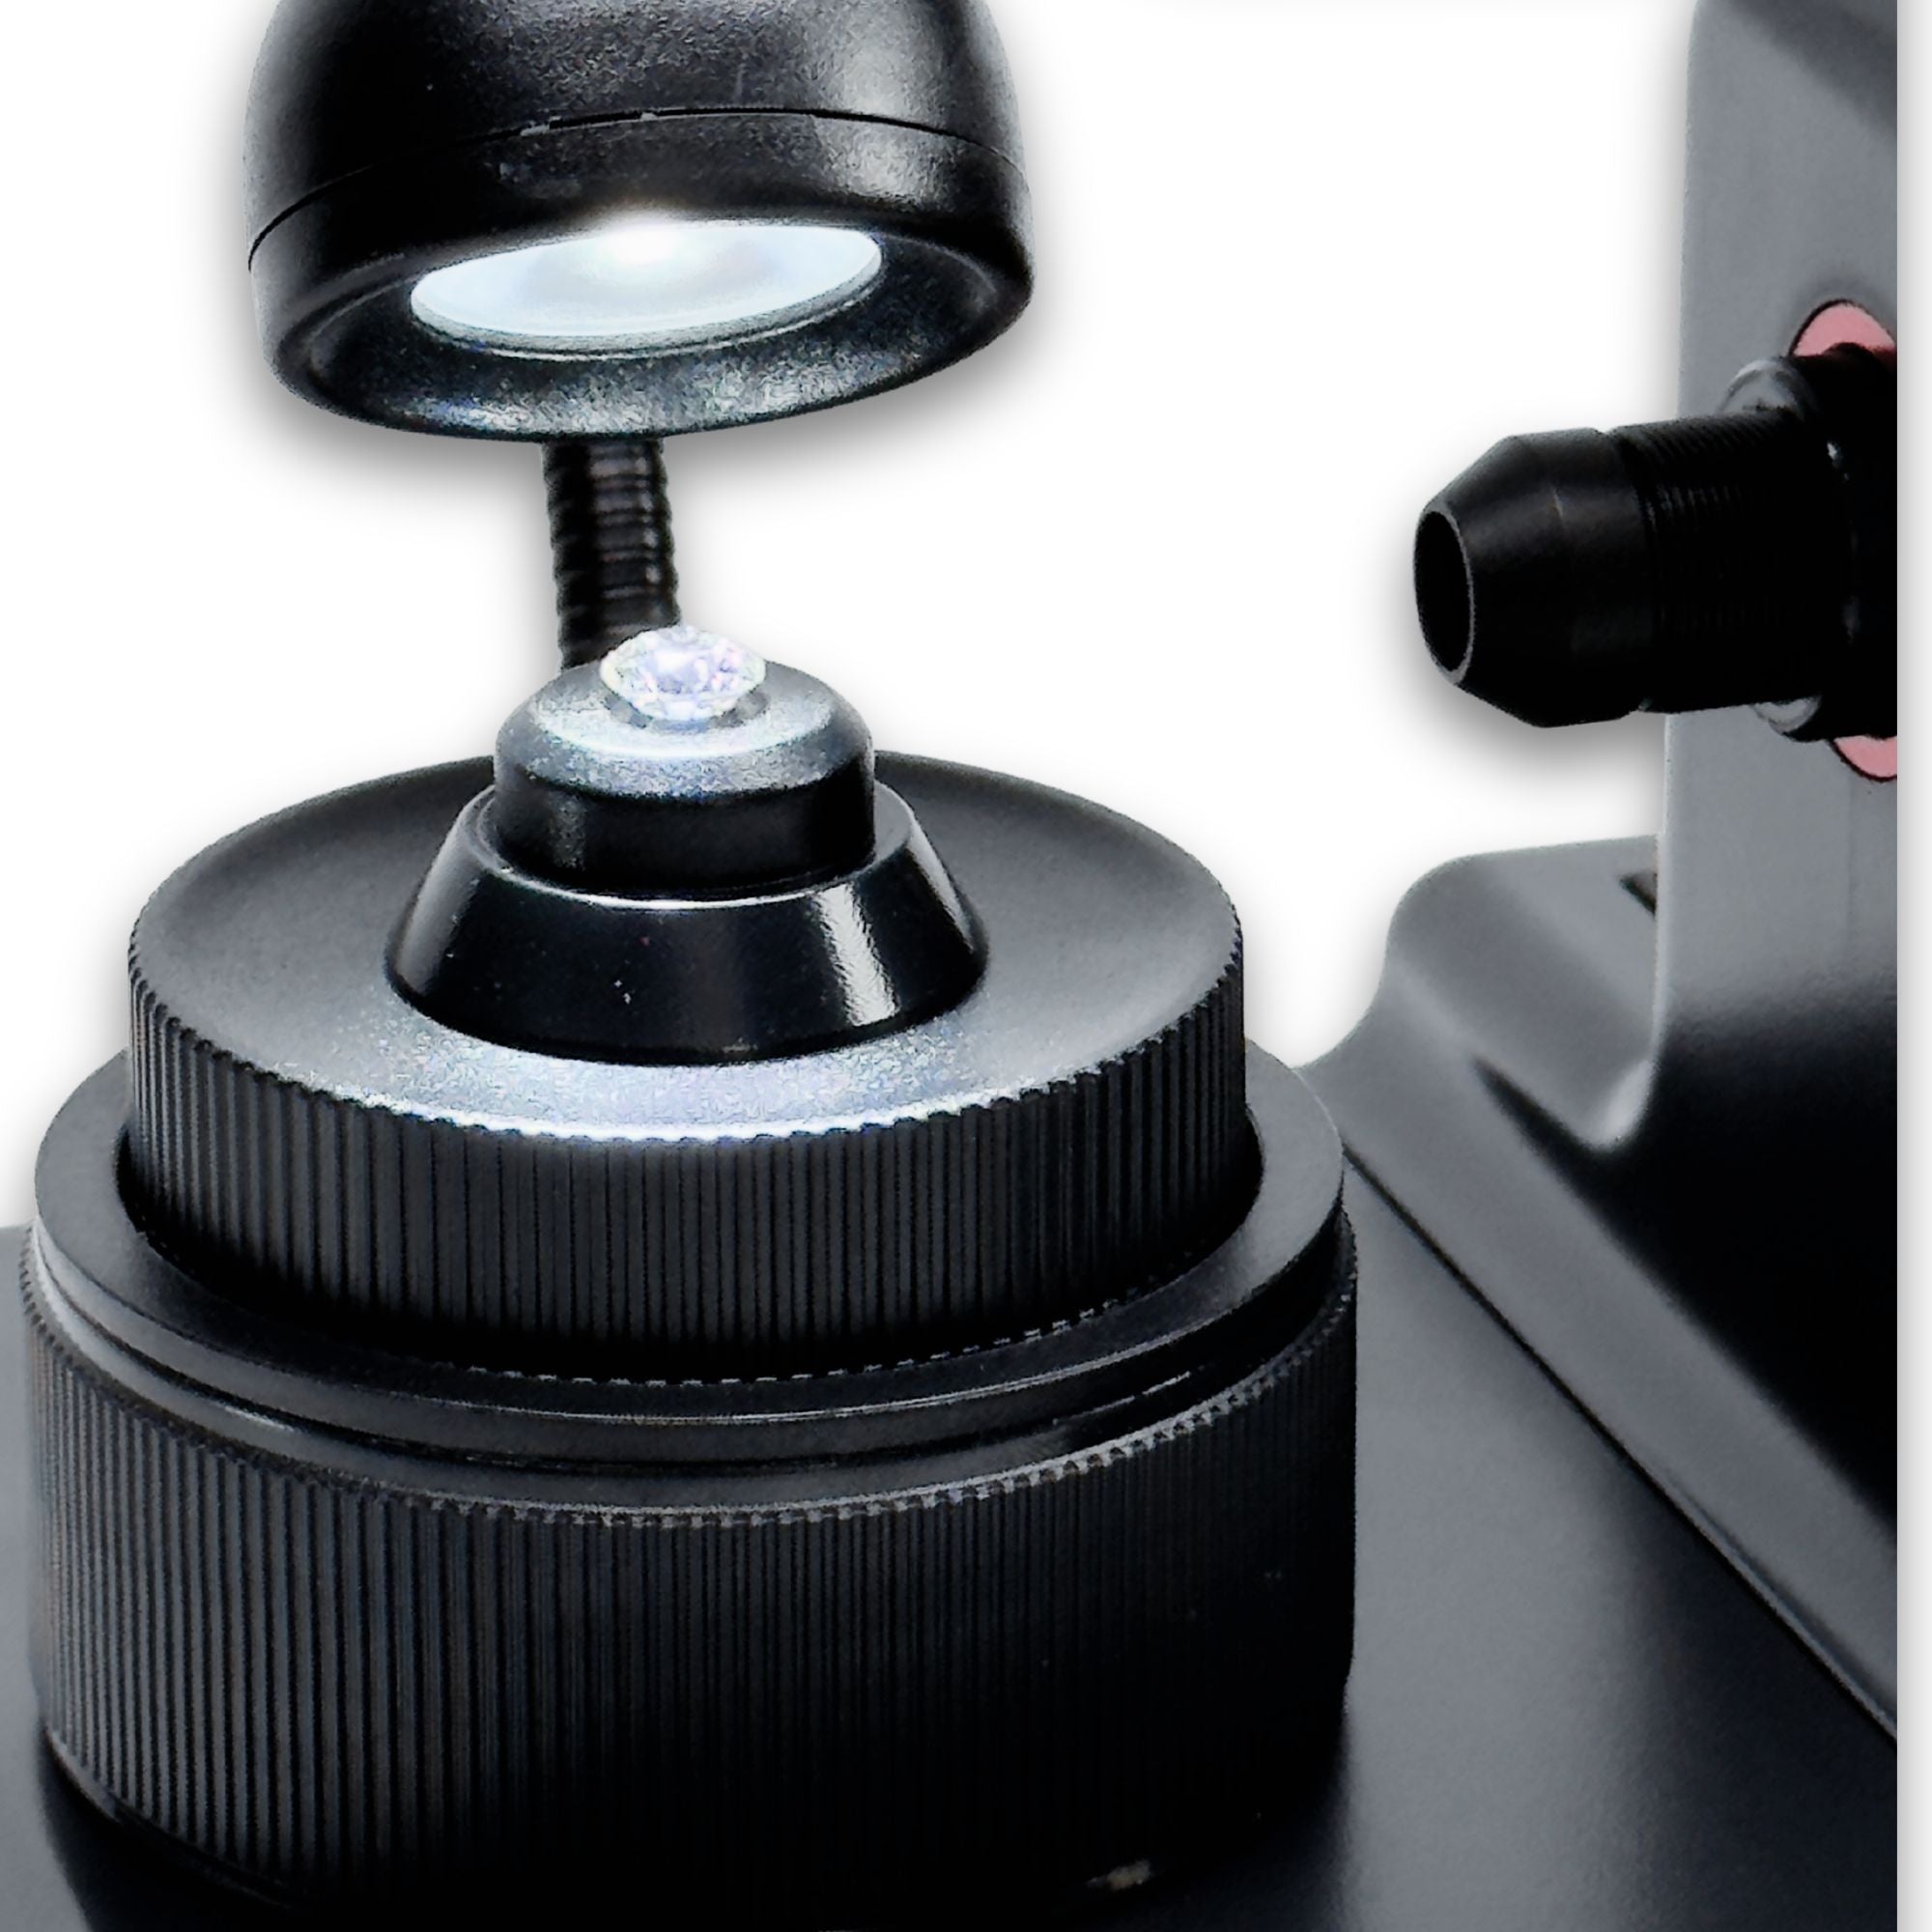 Digitalni mikroskop za prikaz laserske oznake na diamantu